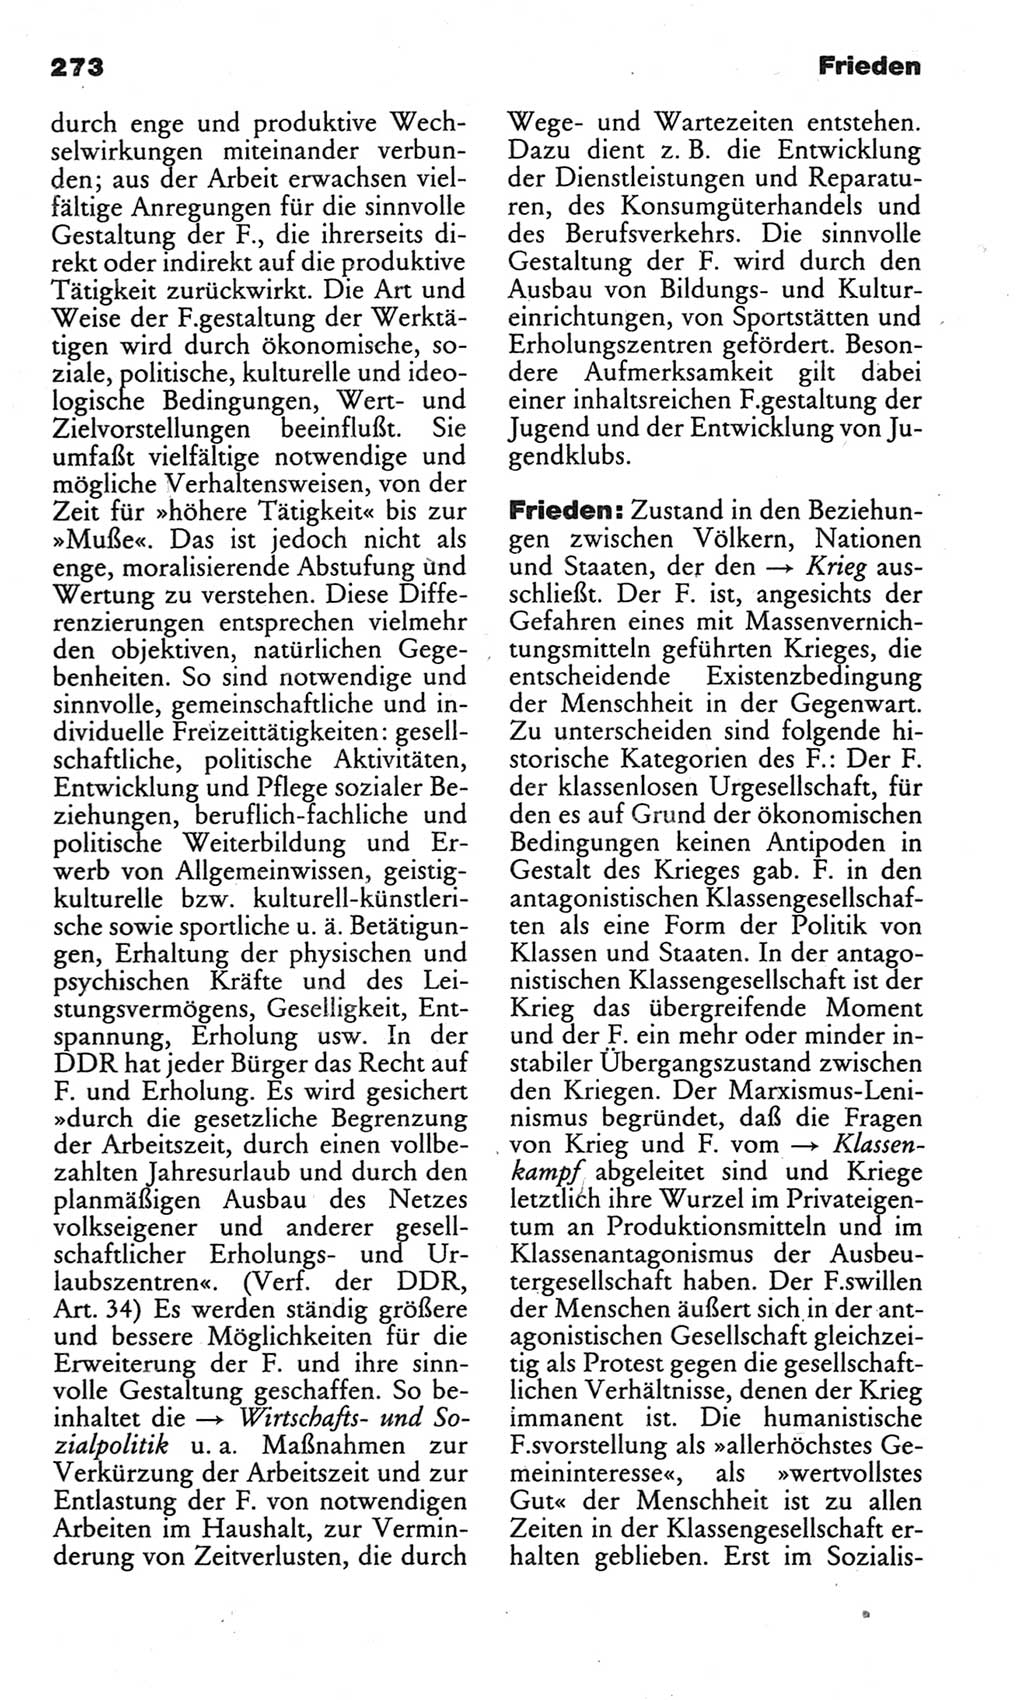 Kleines politisches Wörterbuch [Deutsche Demokratische Republik (DDR)] 1983, Seite 273 (Kl. pol. Wb. DDR 1983, S. 273)